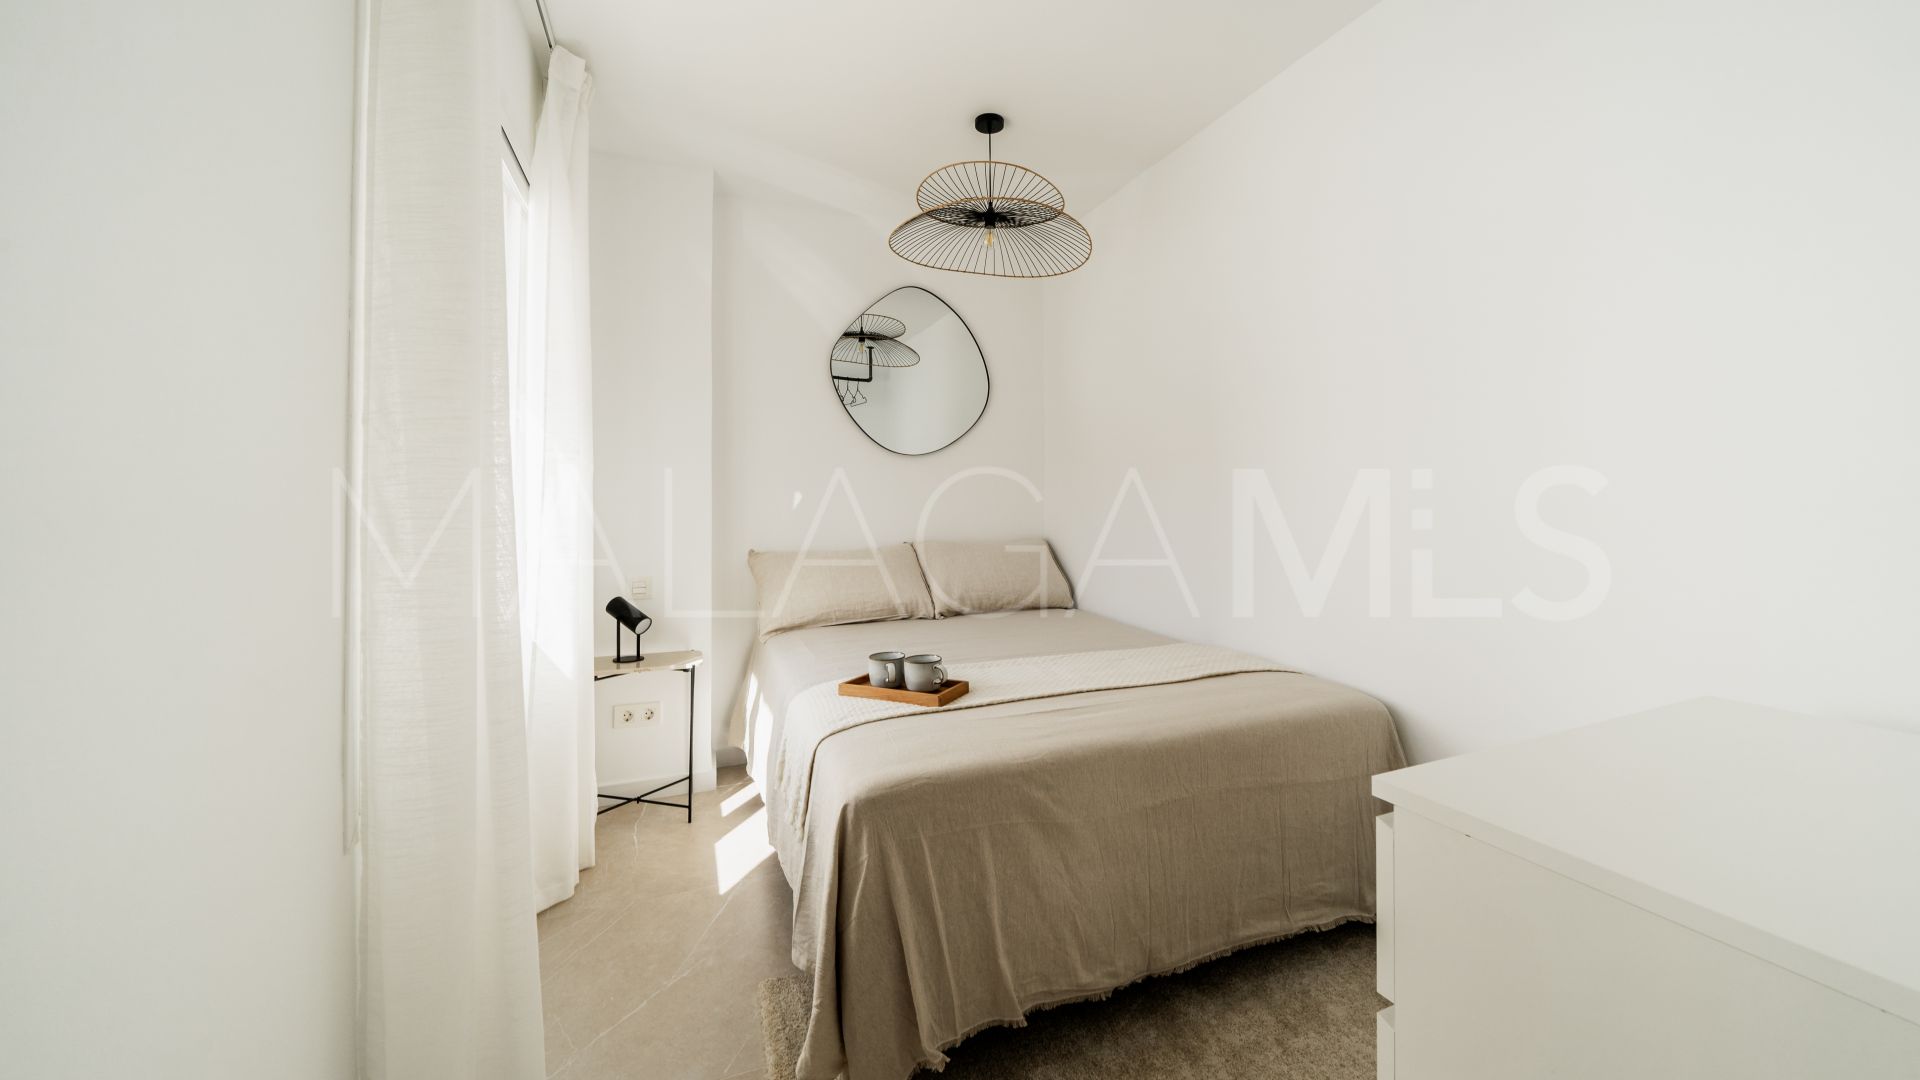 Atico for sale in La Maestranza with 2 bedrooms